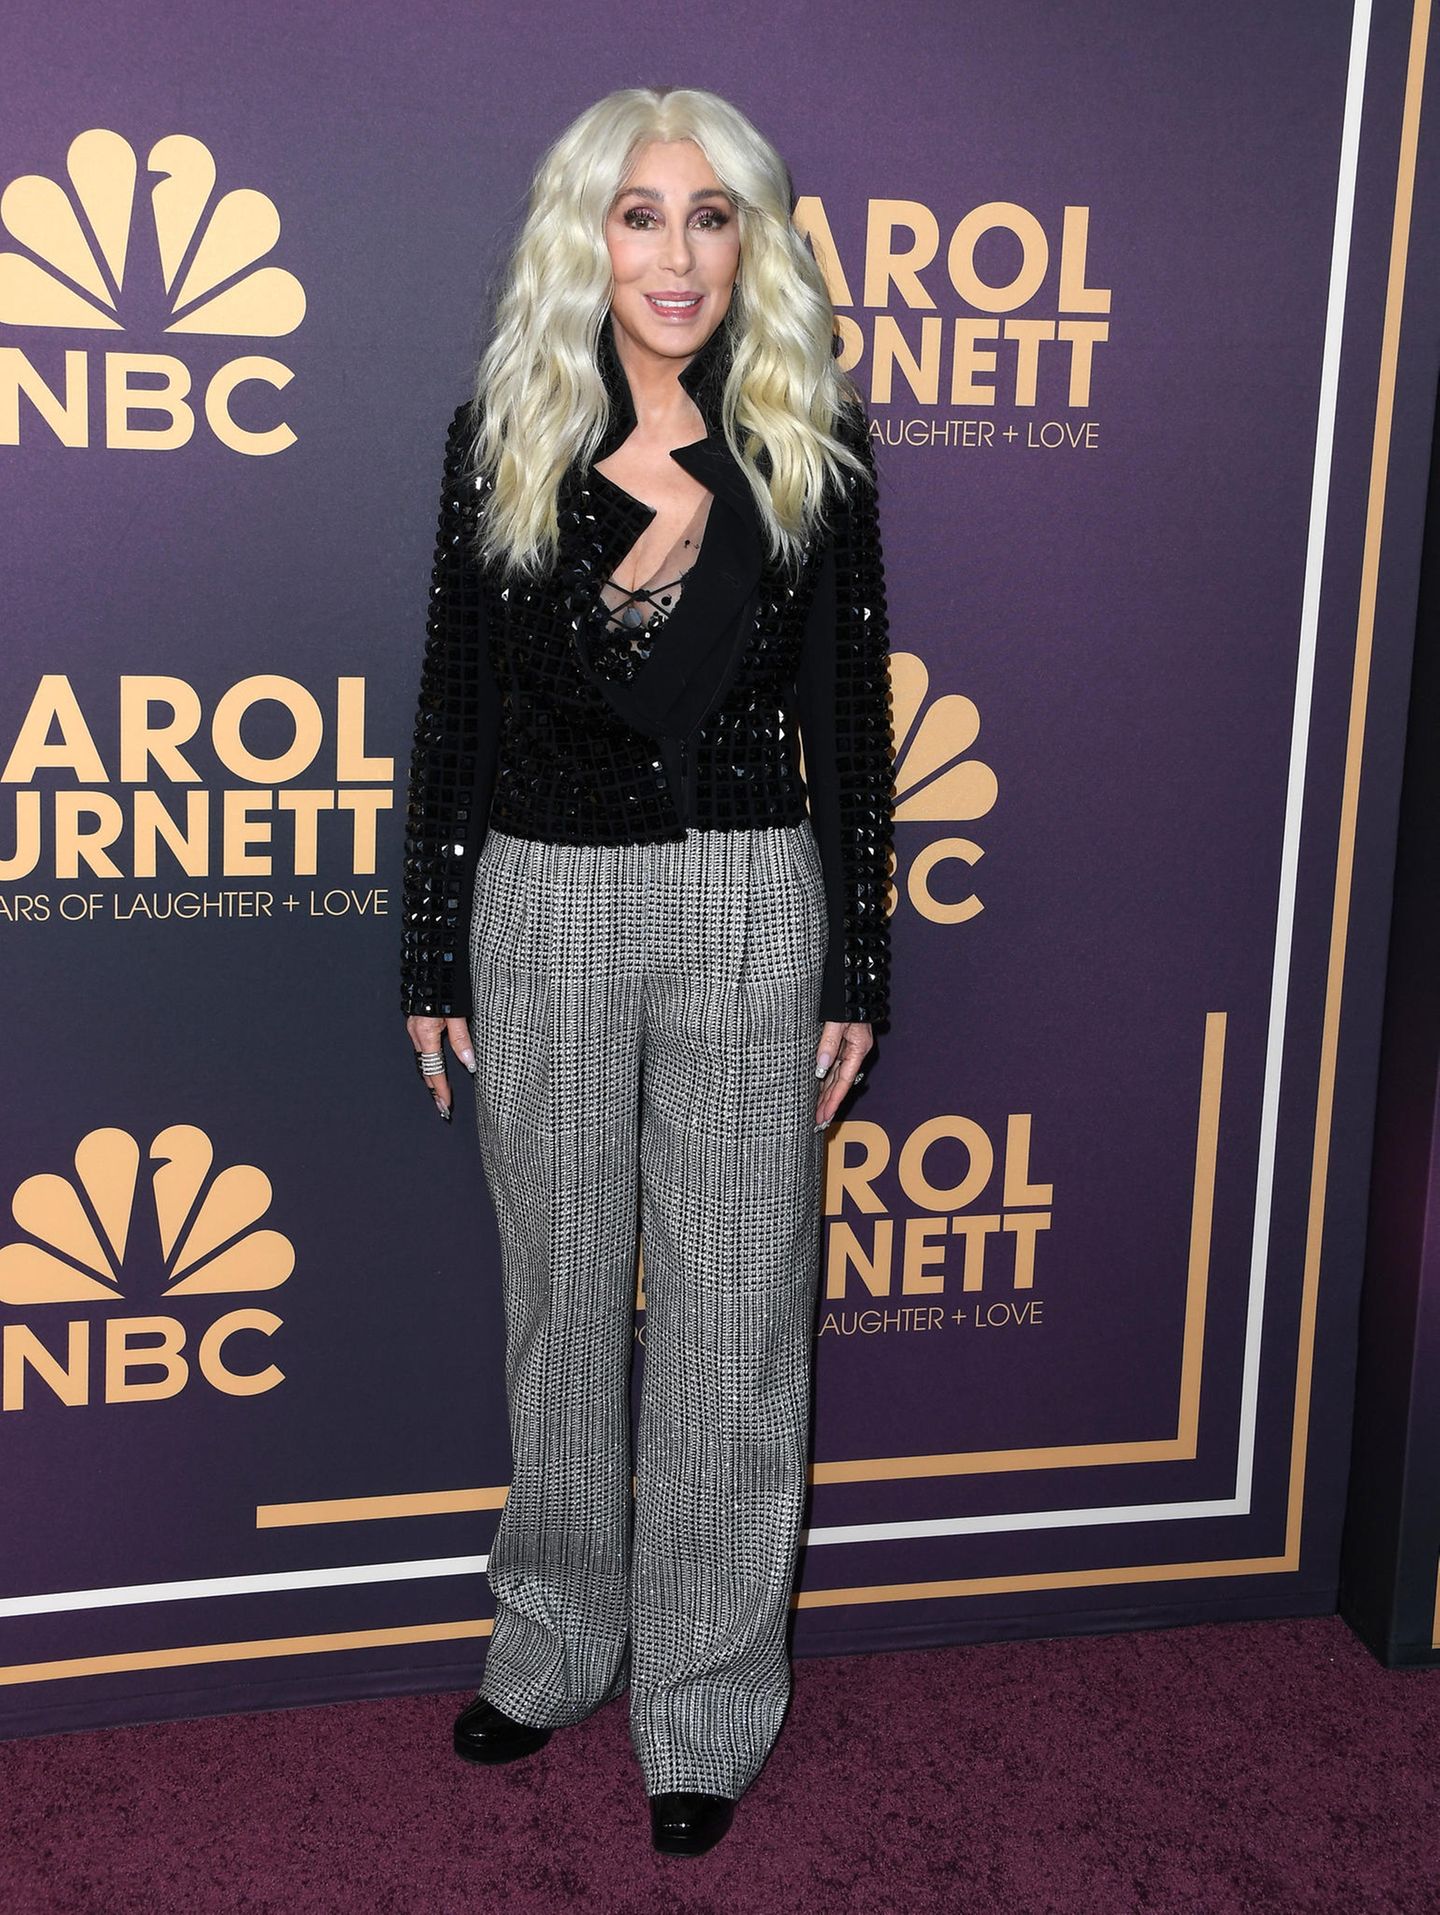 Bei der NBC Geburtstagsshow überrascht Cher mit einem neuen Haarstyling. Zu den platinblonden Haaren trägt sie eine glitzernde Jacke und eine karierte Hose. 